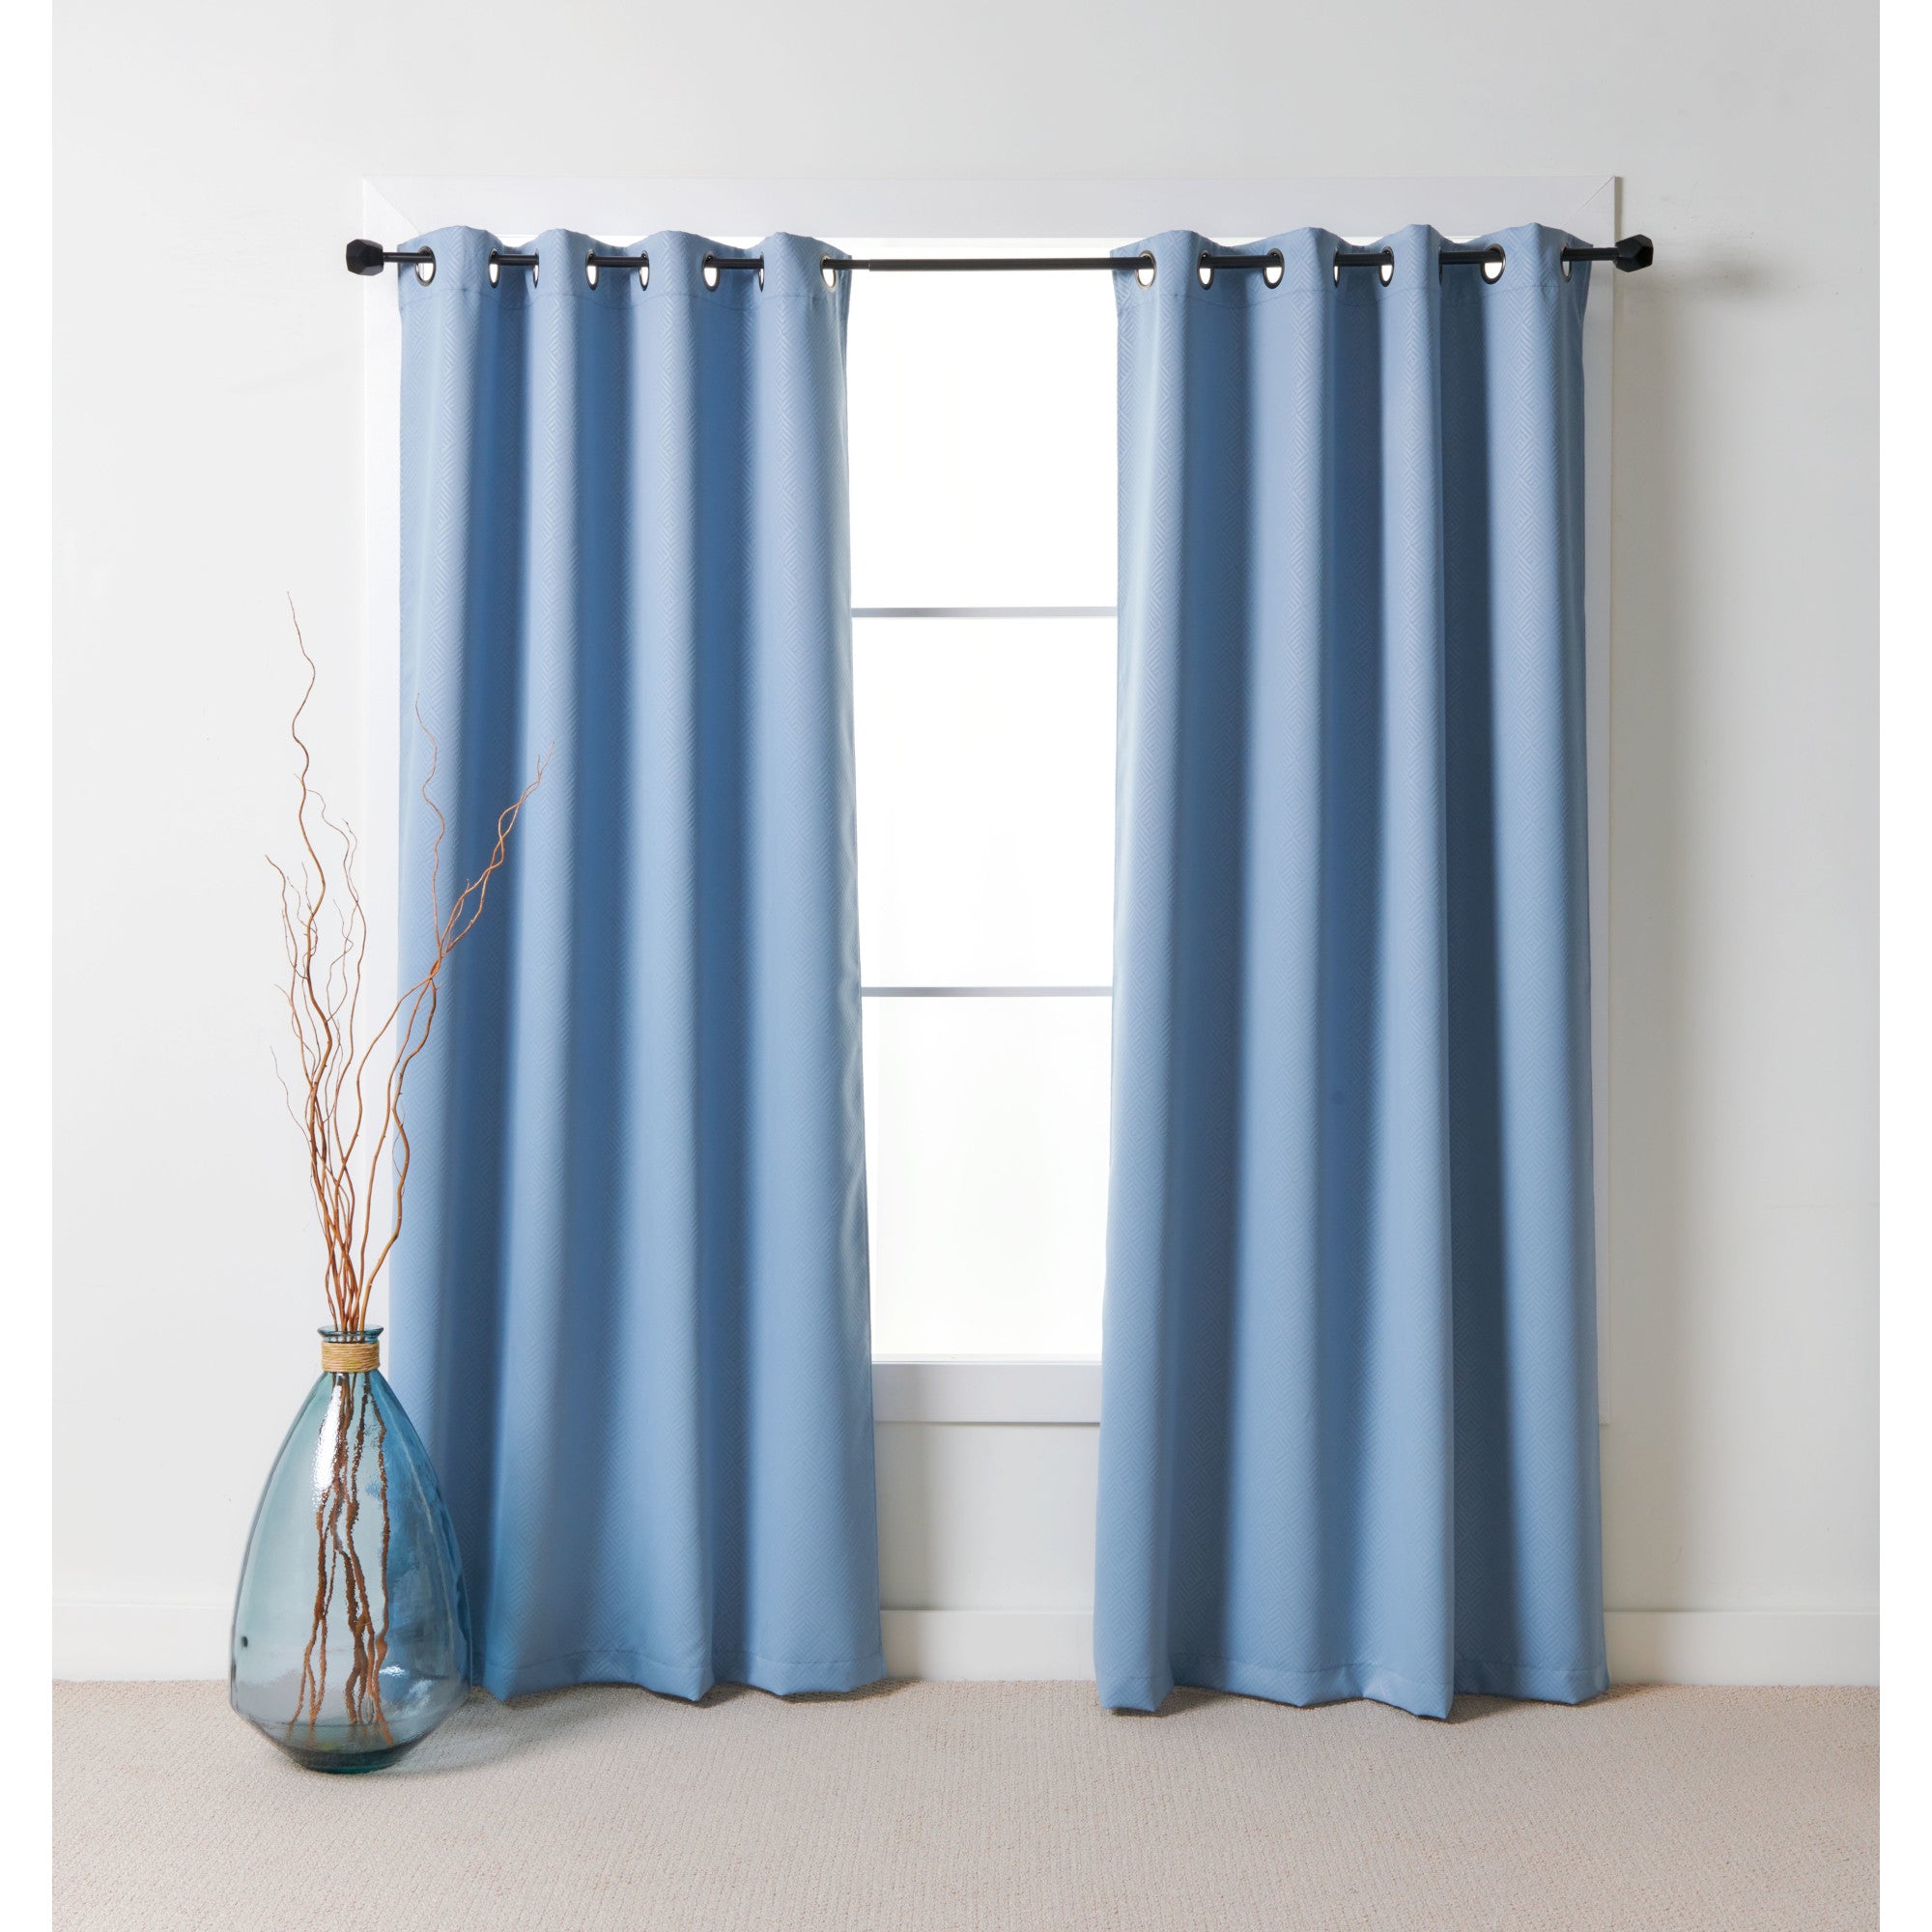 Shower Curtains 70 x 93 from DiaNoche Designs by Brazen Design Studio -  Raven Bird Tree 